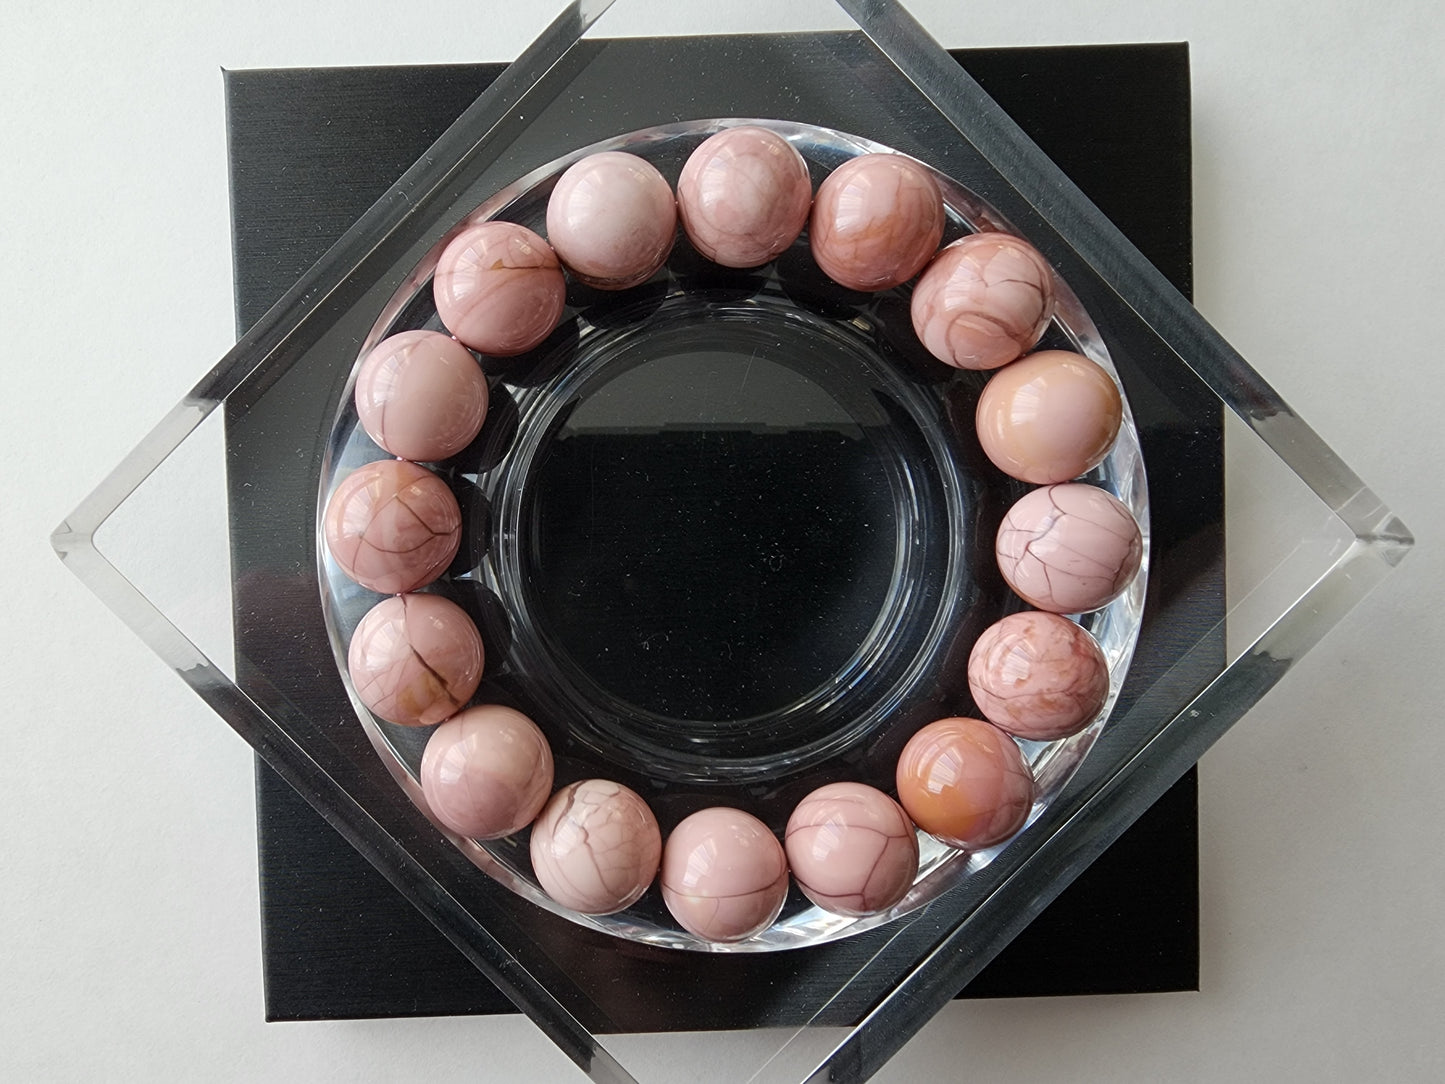 [Bracelet] Alashan Elegance: Pink Bracelet with Unique Natural Patterns on 13mm Stone Beads